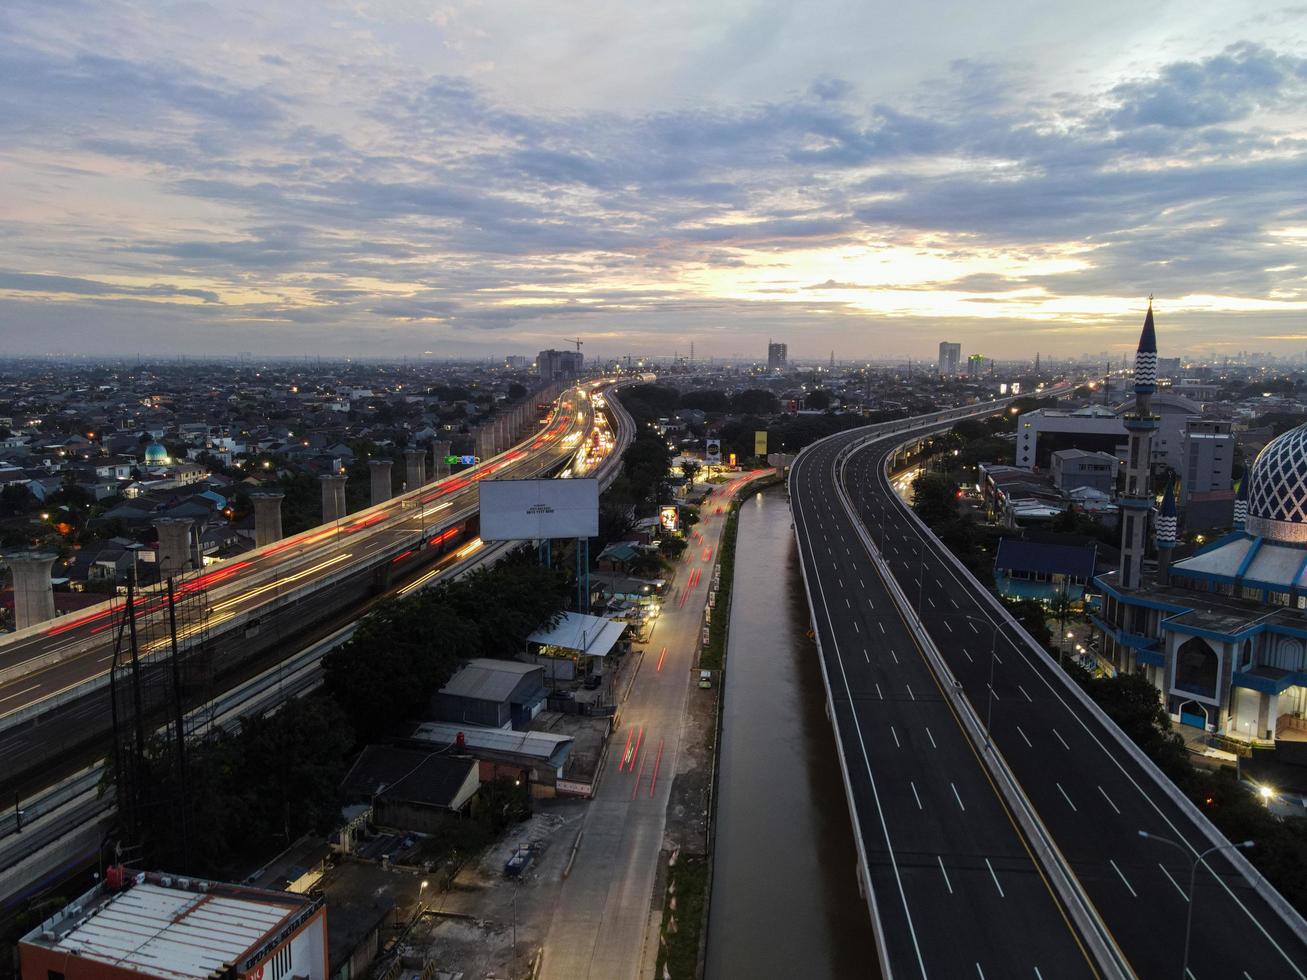 bekasi, indonesia 2021- veduta aerea dell'incrocio autostradale e degli edifici nella città di bekasi foto